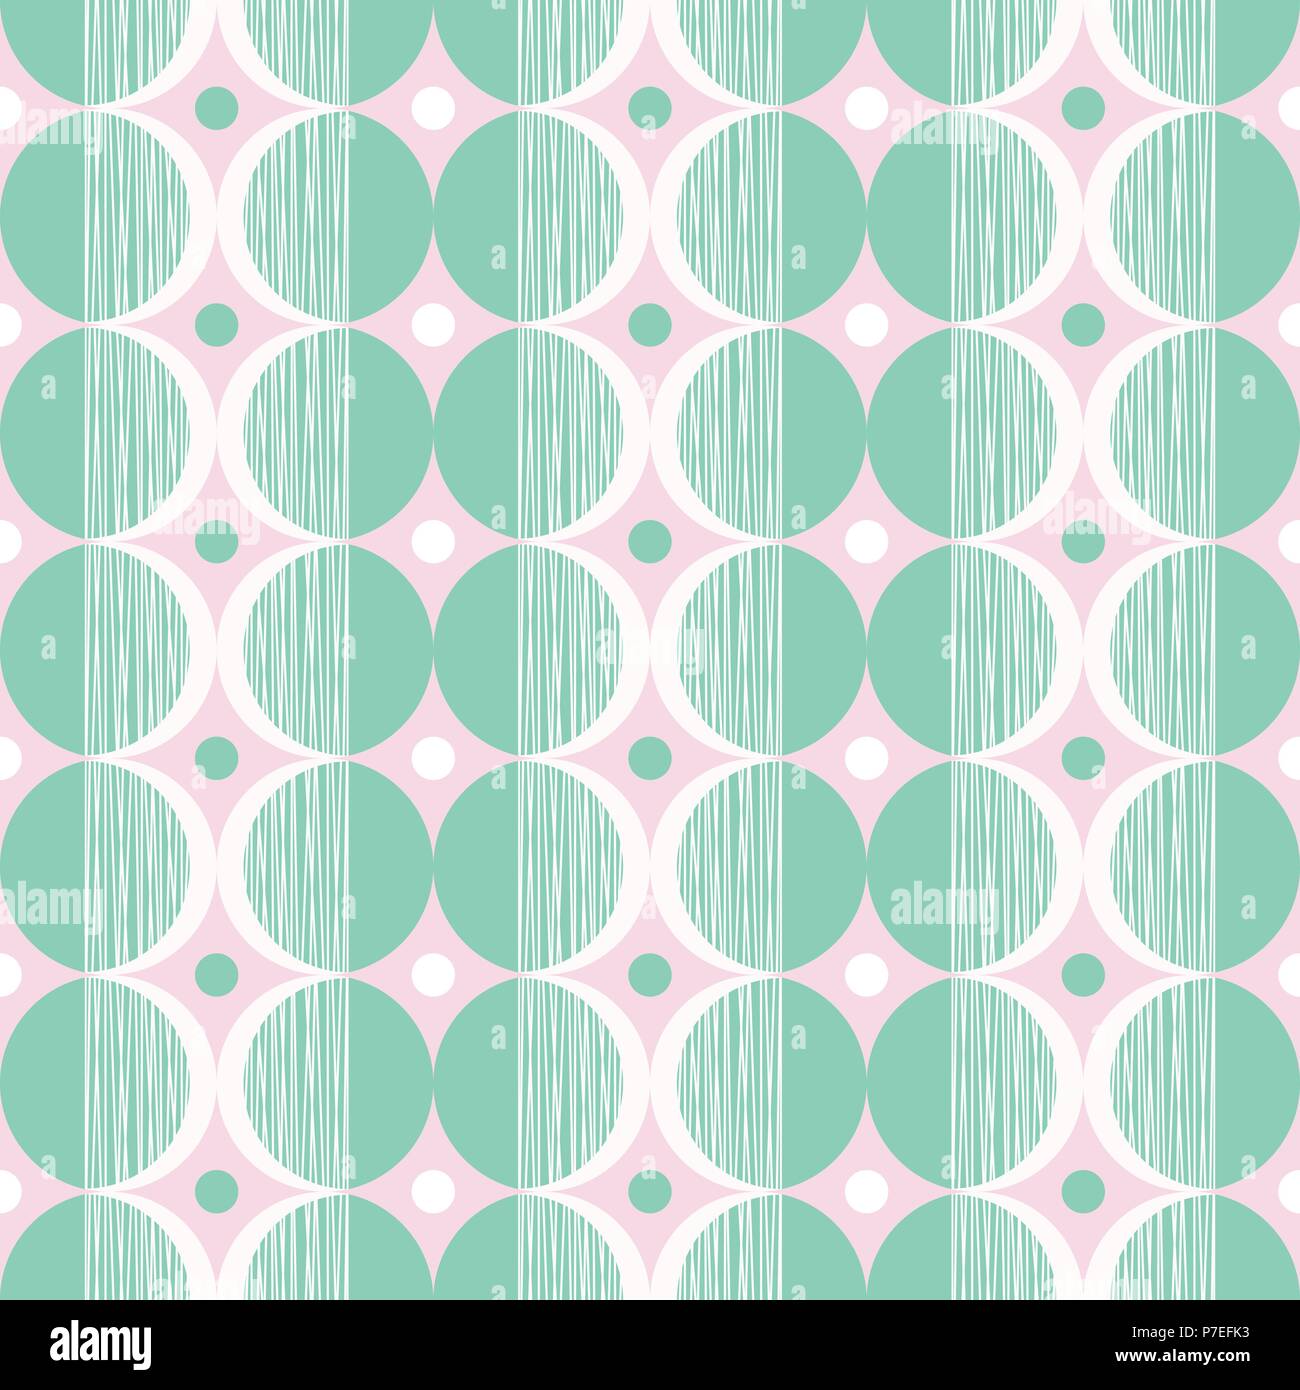 Vecteur de Style Mod rétro Motif transparente à la menthe et crème cercles texturés sur fond rose. Frais et élégant graphique géométrique Résumé Imprimer. Illustration de Vecteur